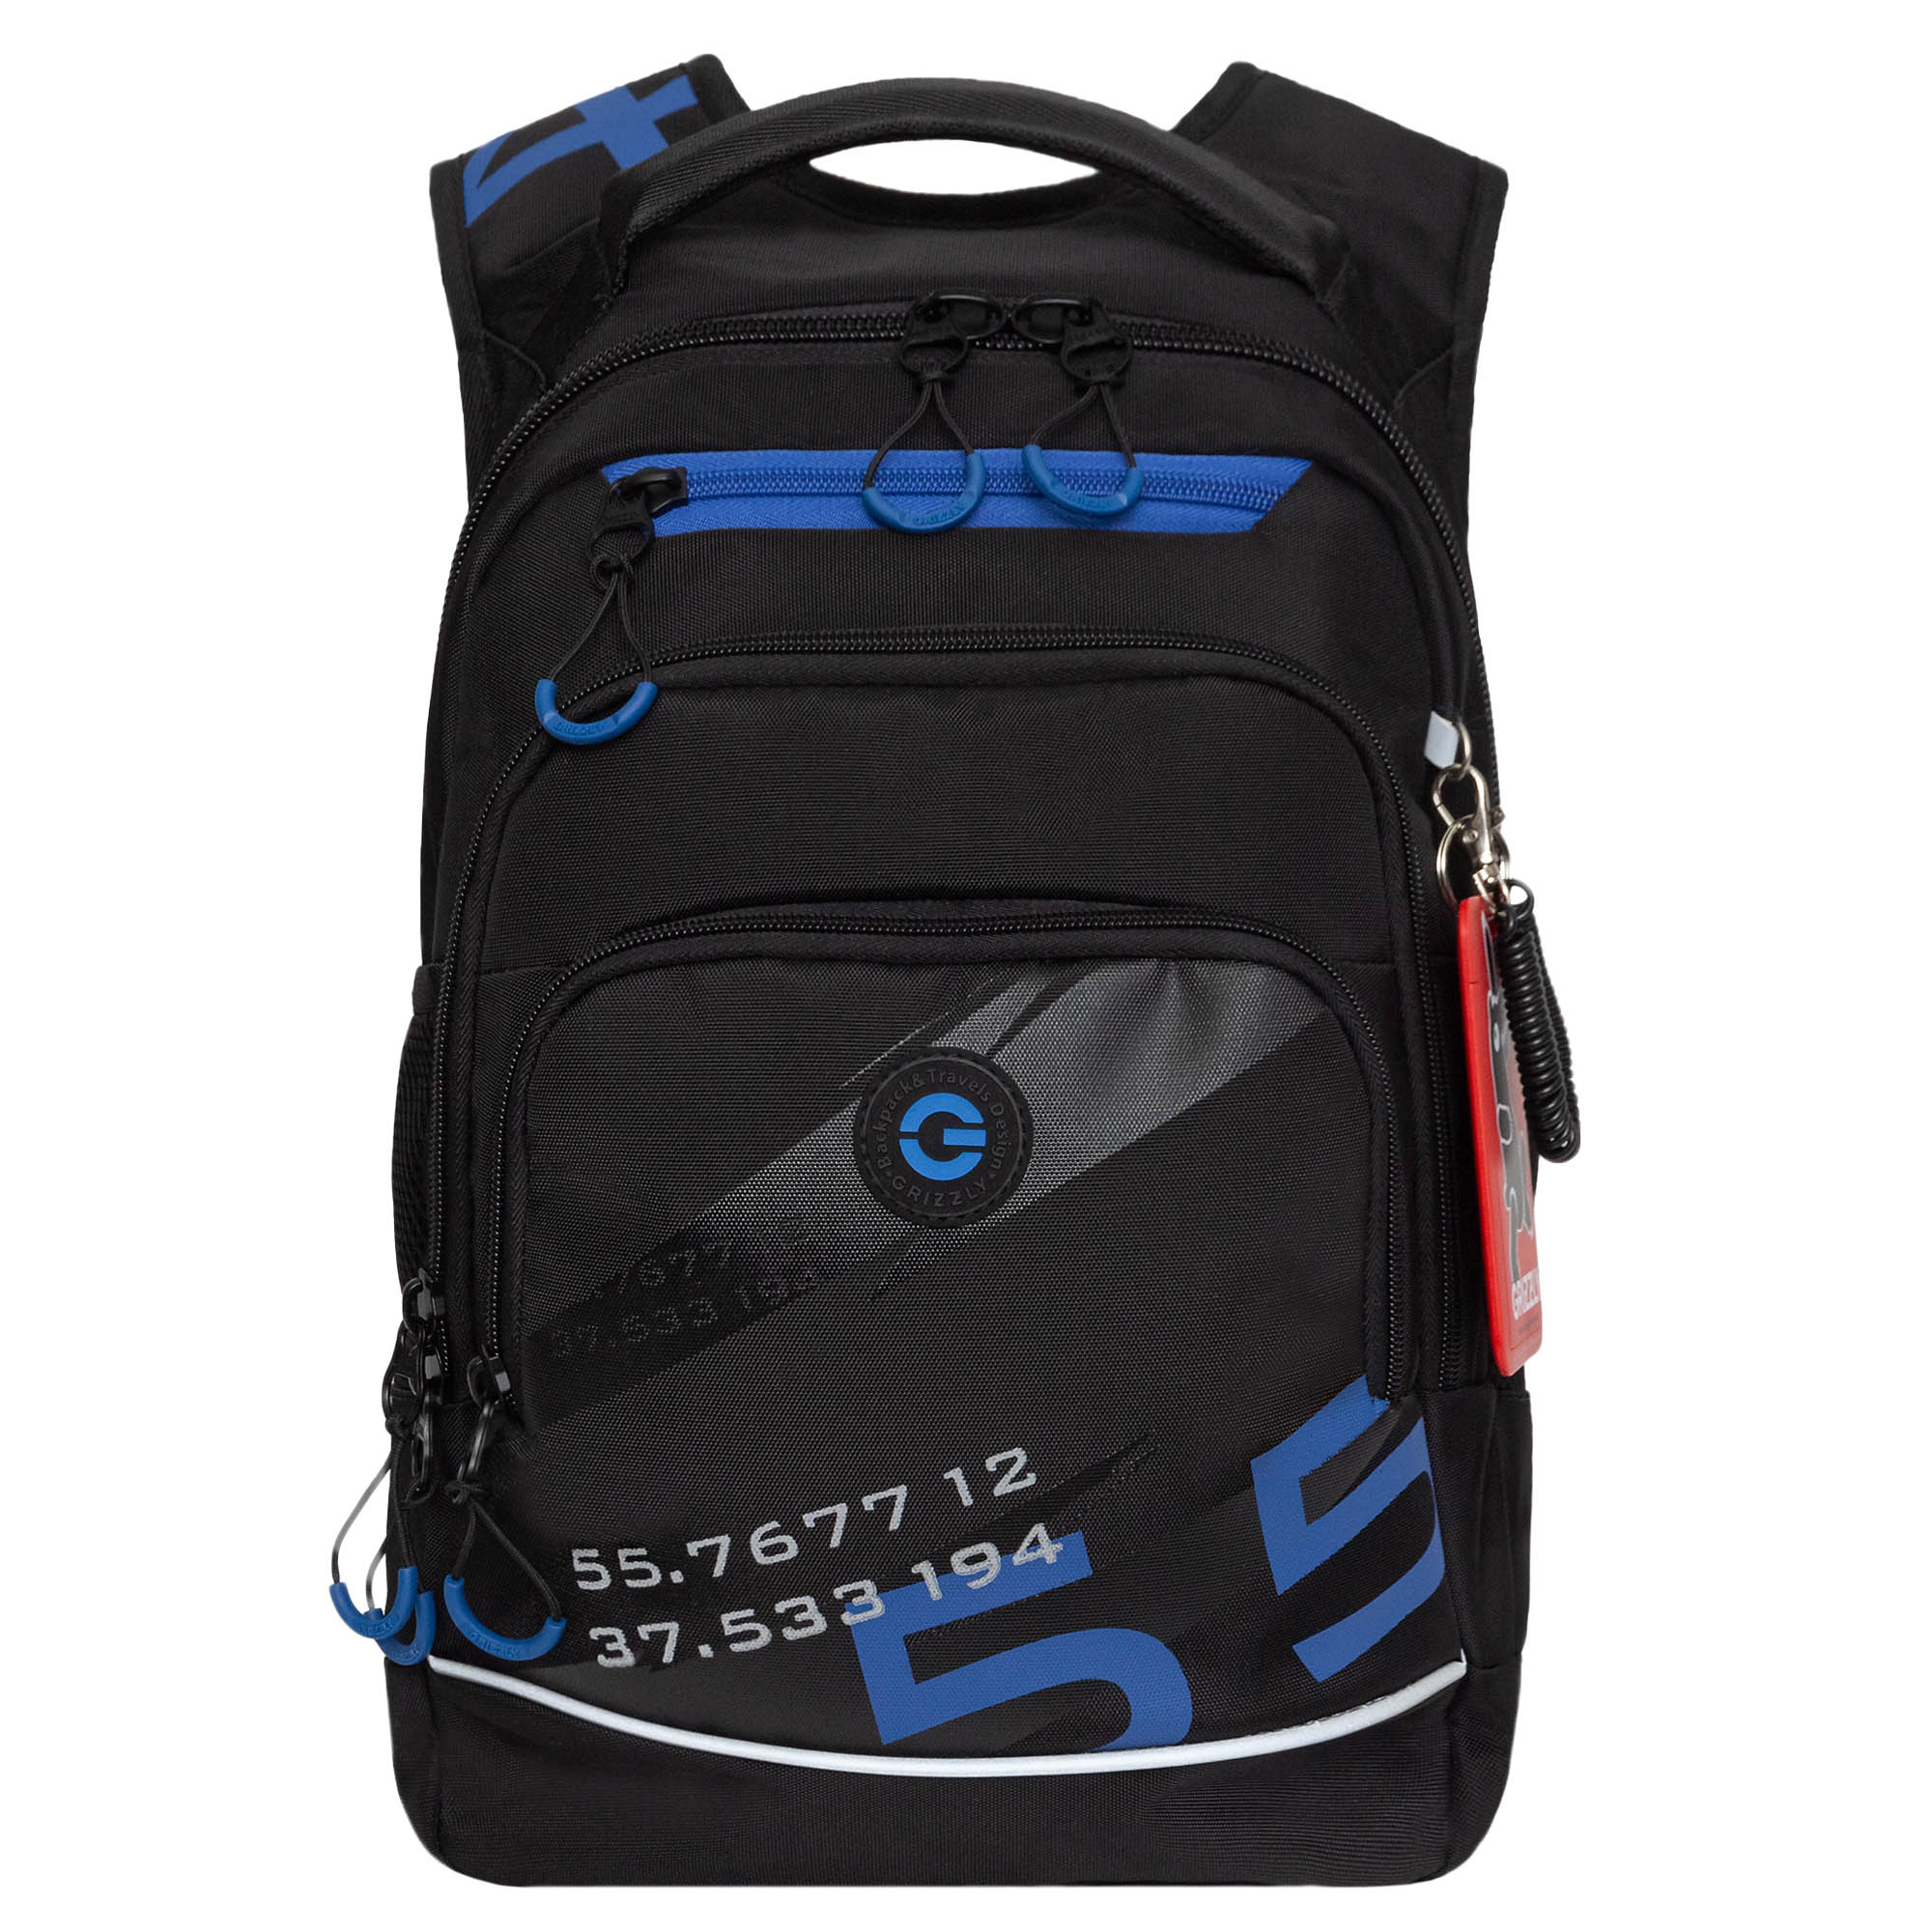 Рюкзак школьный Grizzly с карманом для ноутбука 13, анатомический, черный, синий рюкзак молодежный grizzly rd 440 4 1 с карманом для ноутбука 13 золото